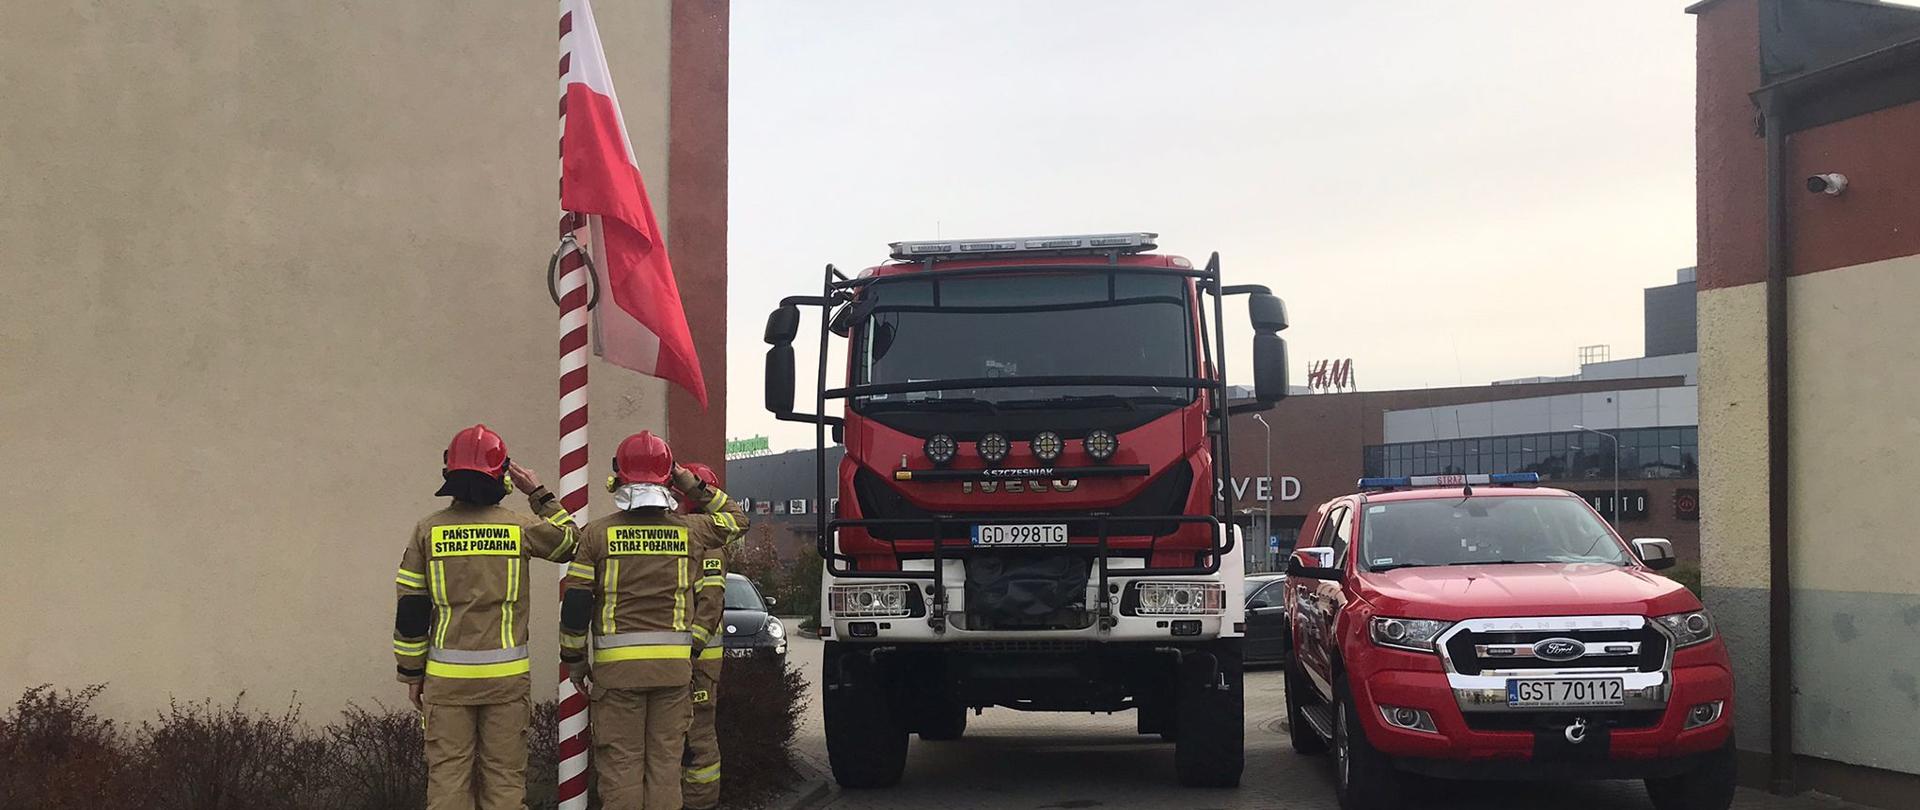 Zdjęcie przedstawia uroczyste podniesienie flagi, poczet flagowy stoi tyłem, po prawej stronie samochody strażackie, flaga państwowa wciągana jest na maszt